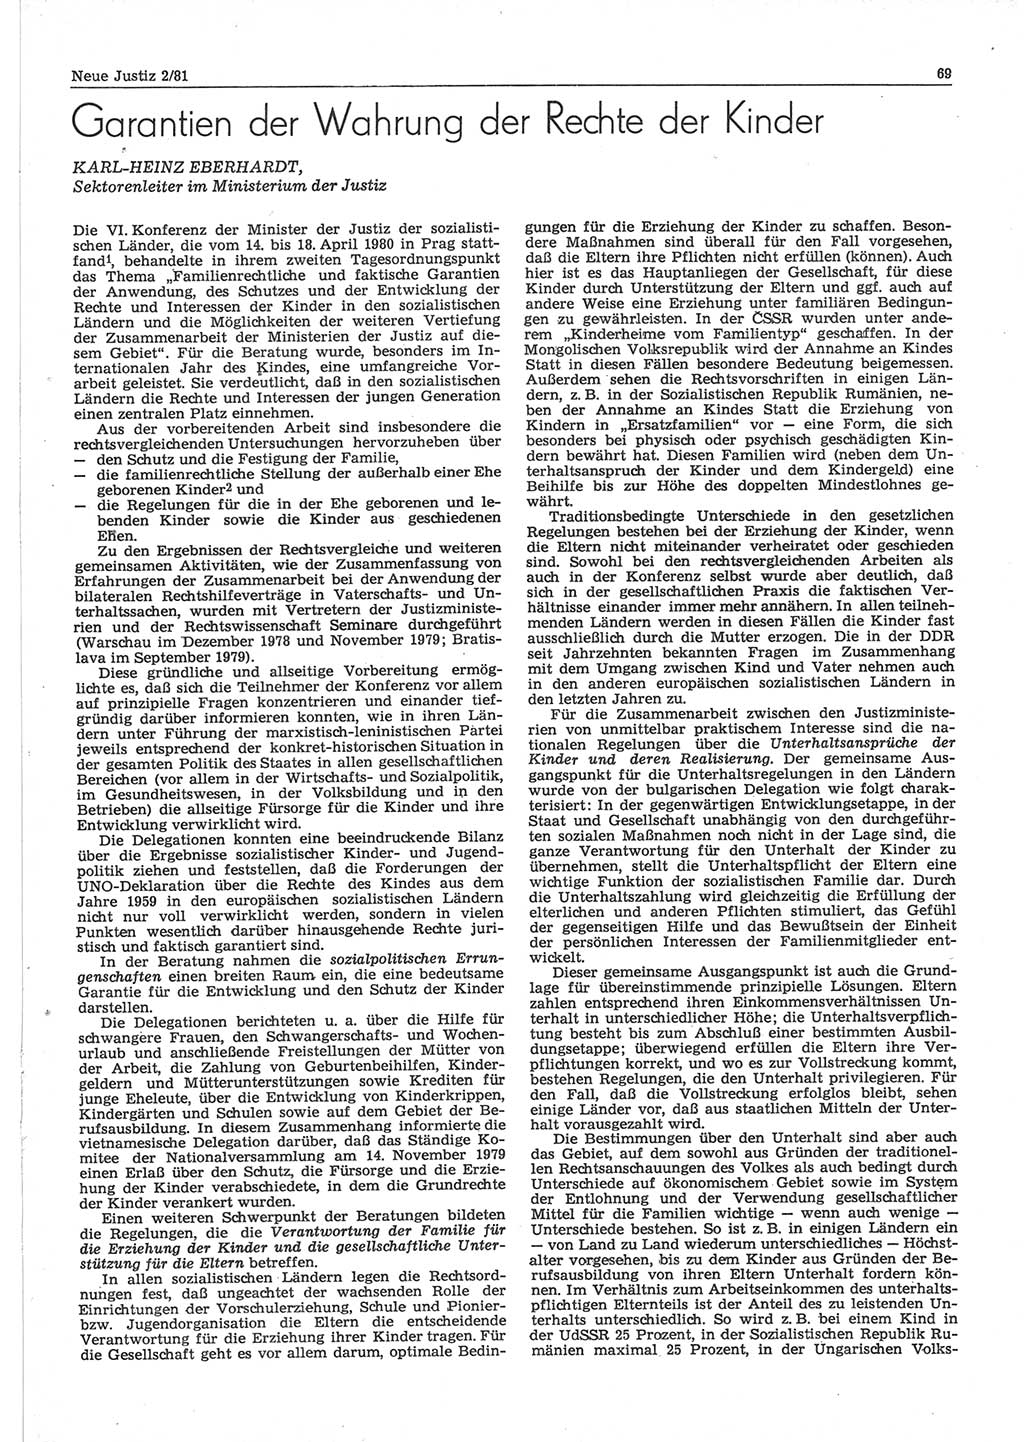 Neue Justiz (NJ), Zeitschrift für sozialistisches Recht und Gesetzlichkeit [Deutsche Demokratische Republik (DDR)], 35. Jahrgang 1981, Seite 69 (NJ DDR 1981, S. 69)